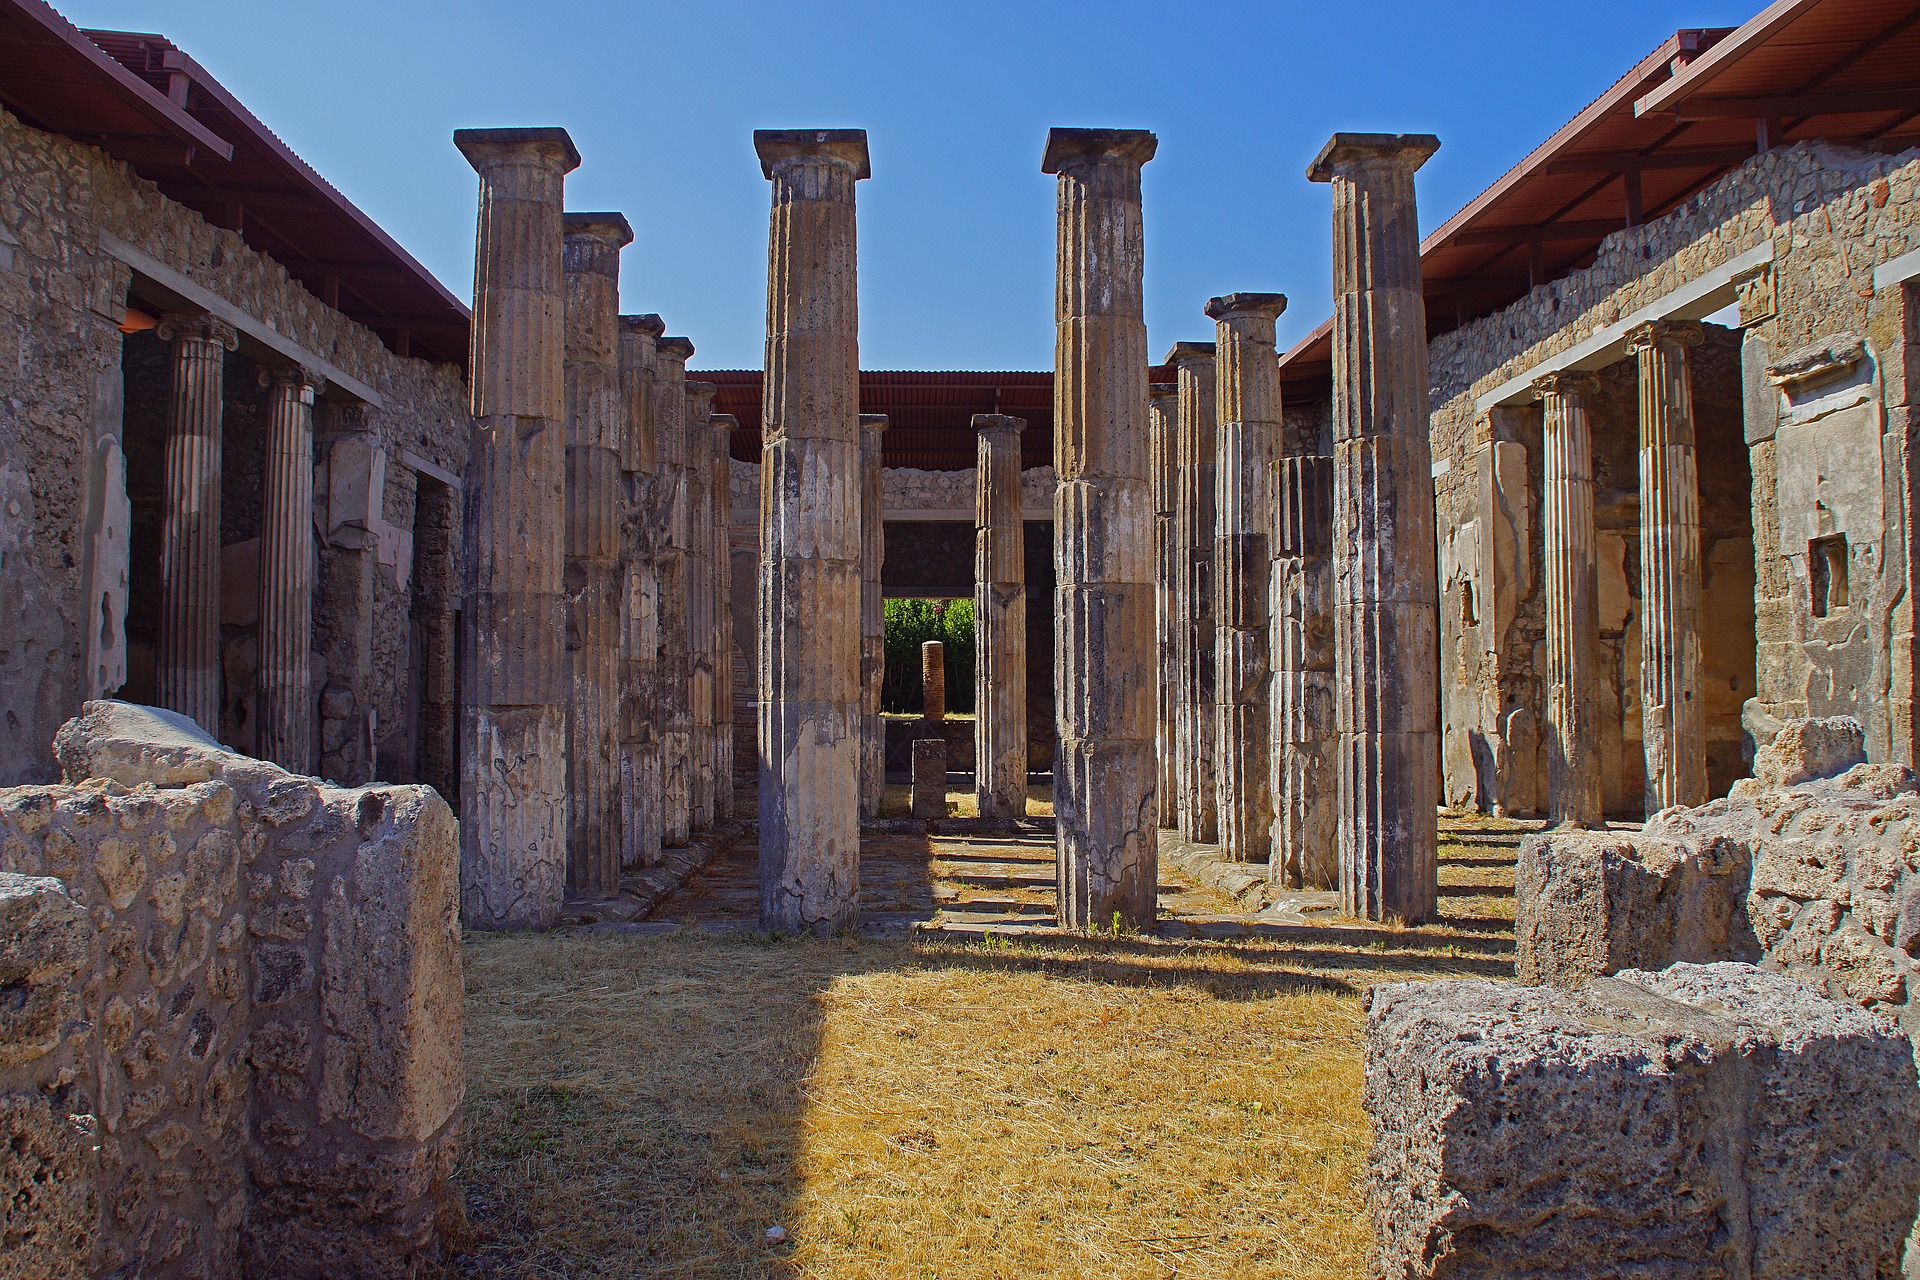 How did Pompeii victims die?